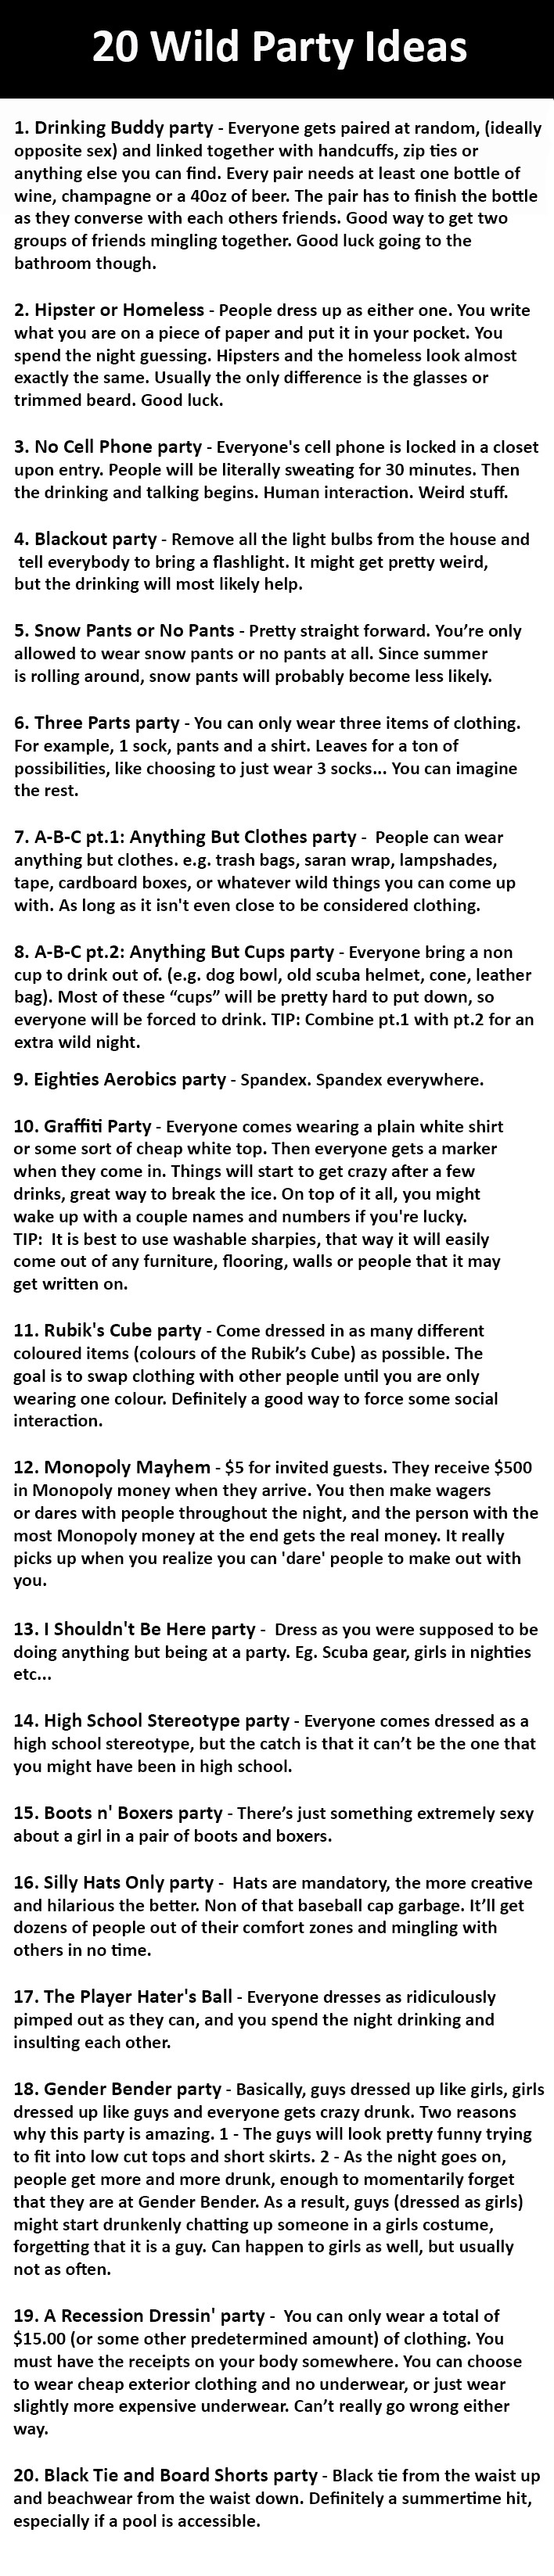 20 wild party ideas